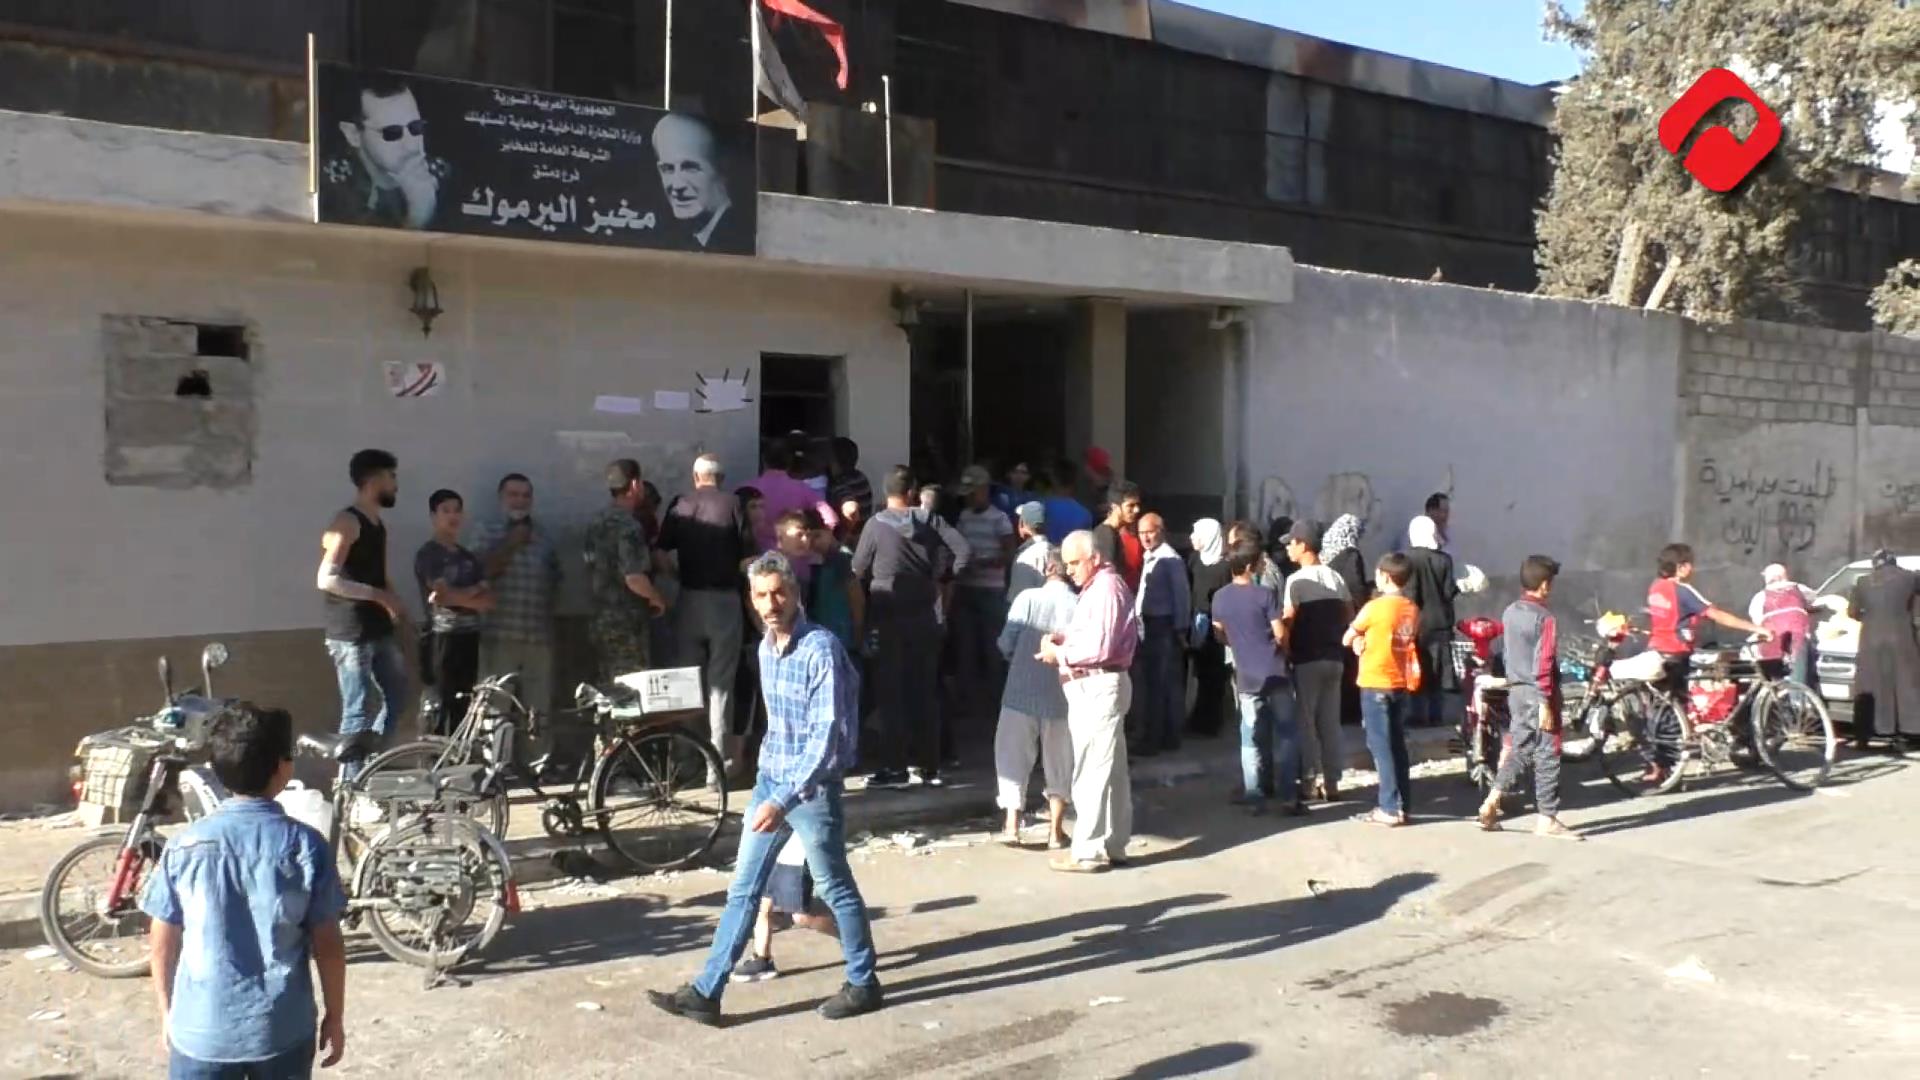 كورونا ينتظر دوره على اﻷفران وصالات السورية للتجارة بين جموع المواطنين (فيديو)